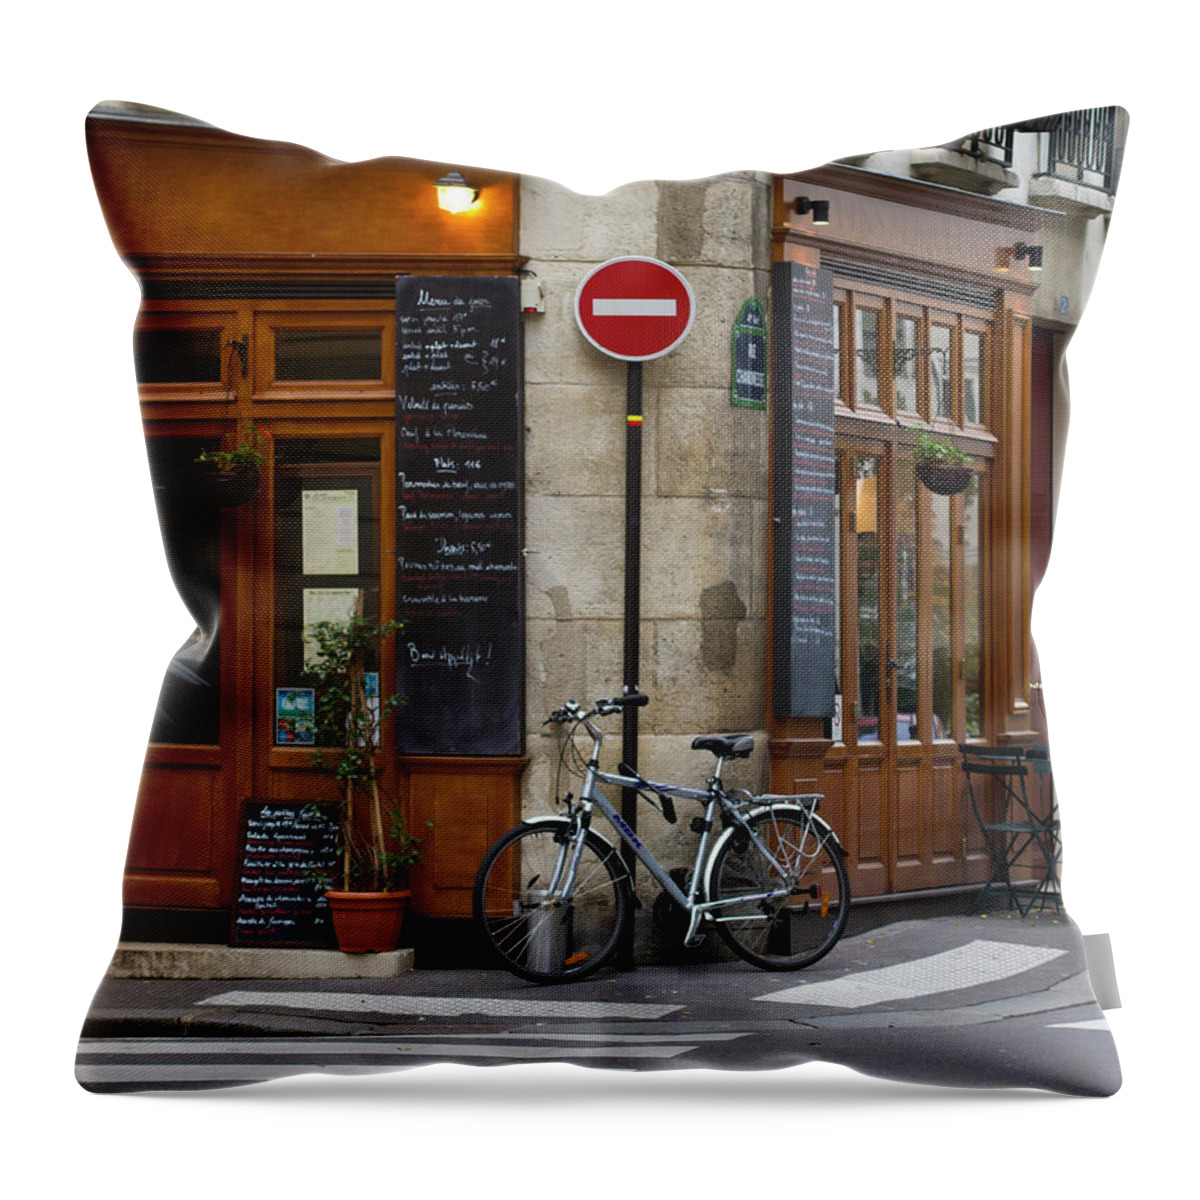 Paris Photography Throw Pillow featuring the photograph Rue De La Colombe - Paris Photograph by Melanie Alexandra Price